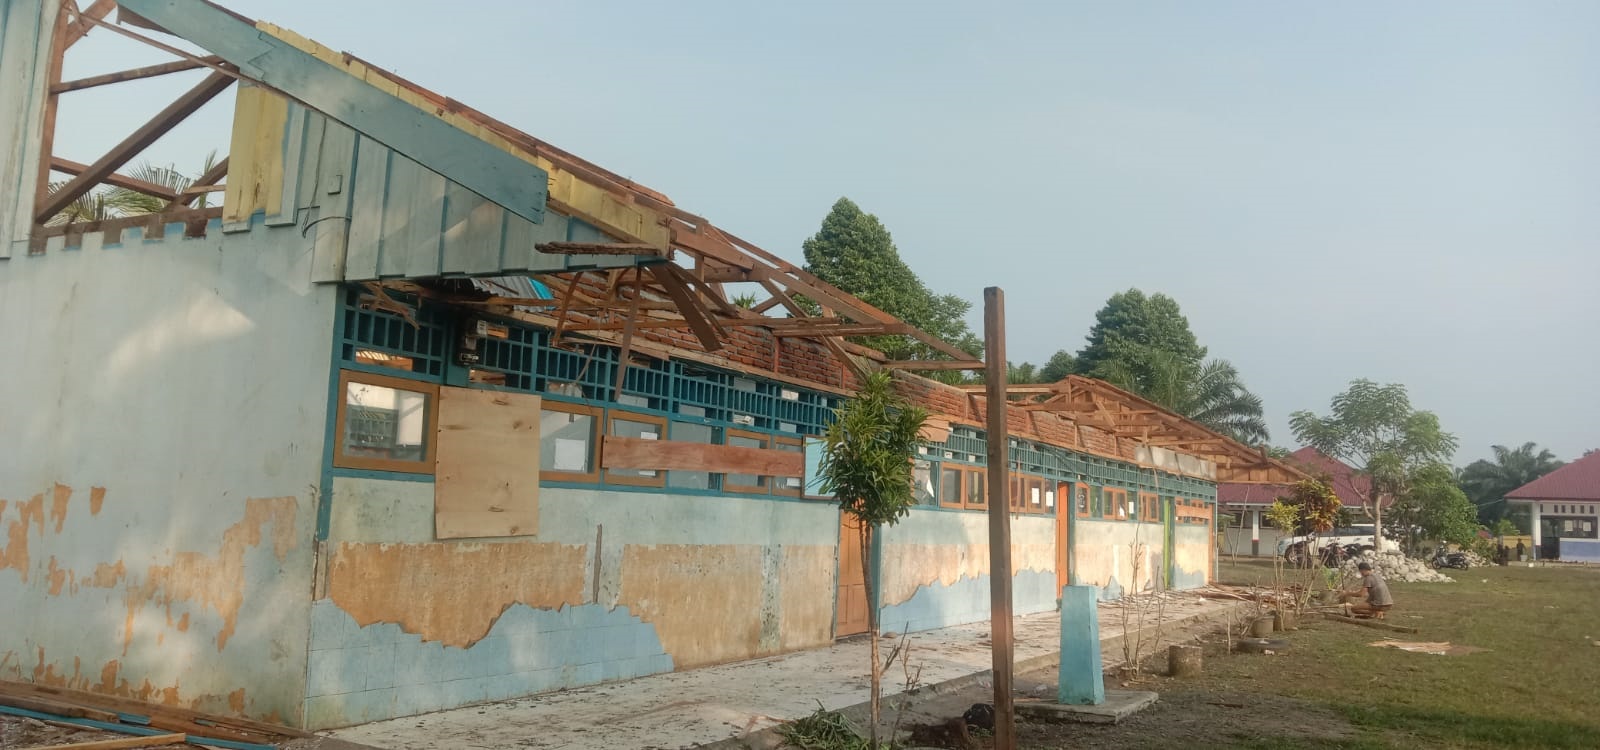 Pihak Sekolah Cuwek, Usulan Perbaikan Gedung Minim,  Batas Pengusulan DAK Juli